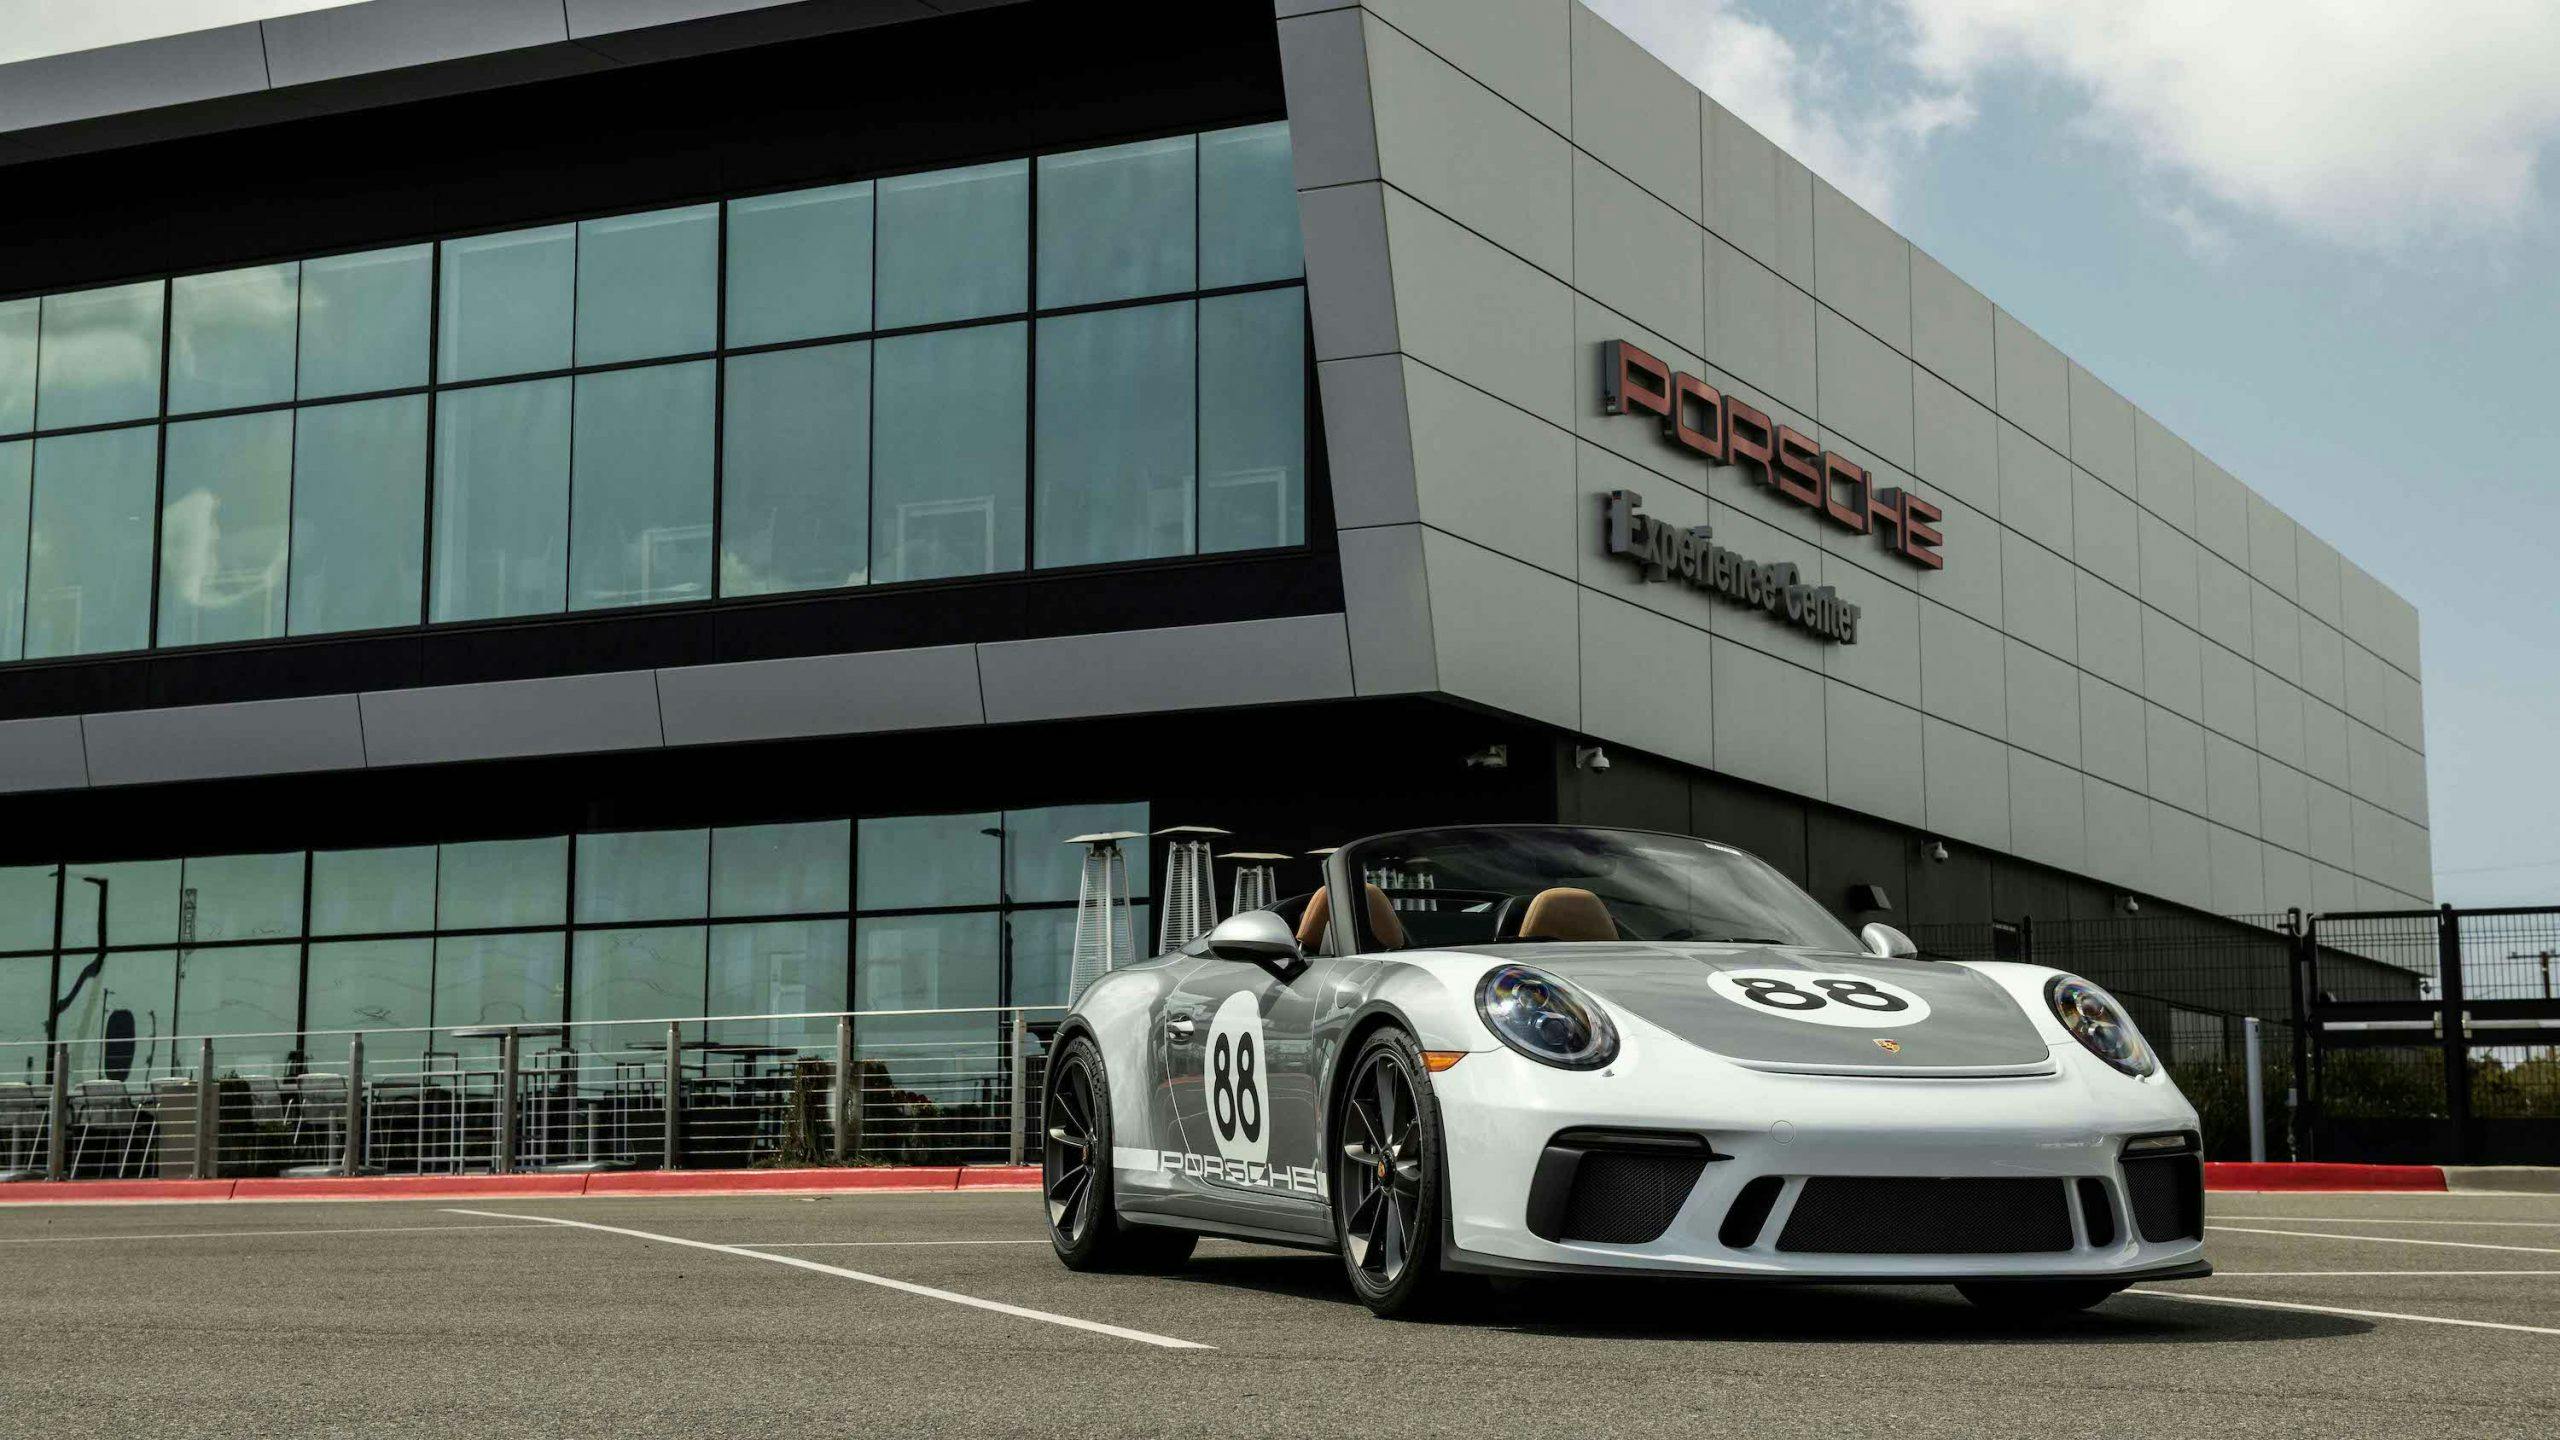 2019 Porsche 911 Speedster Heritage Design Front Three-Quarter at Experience Center